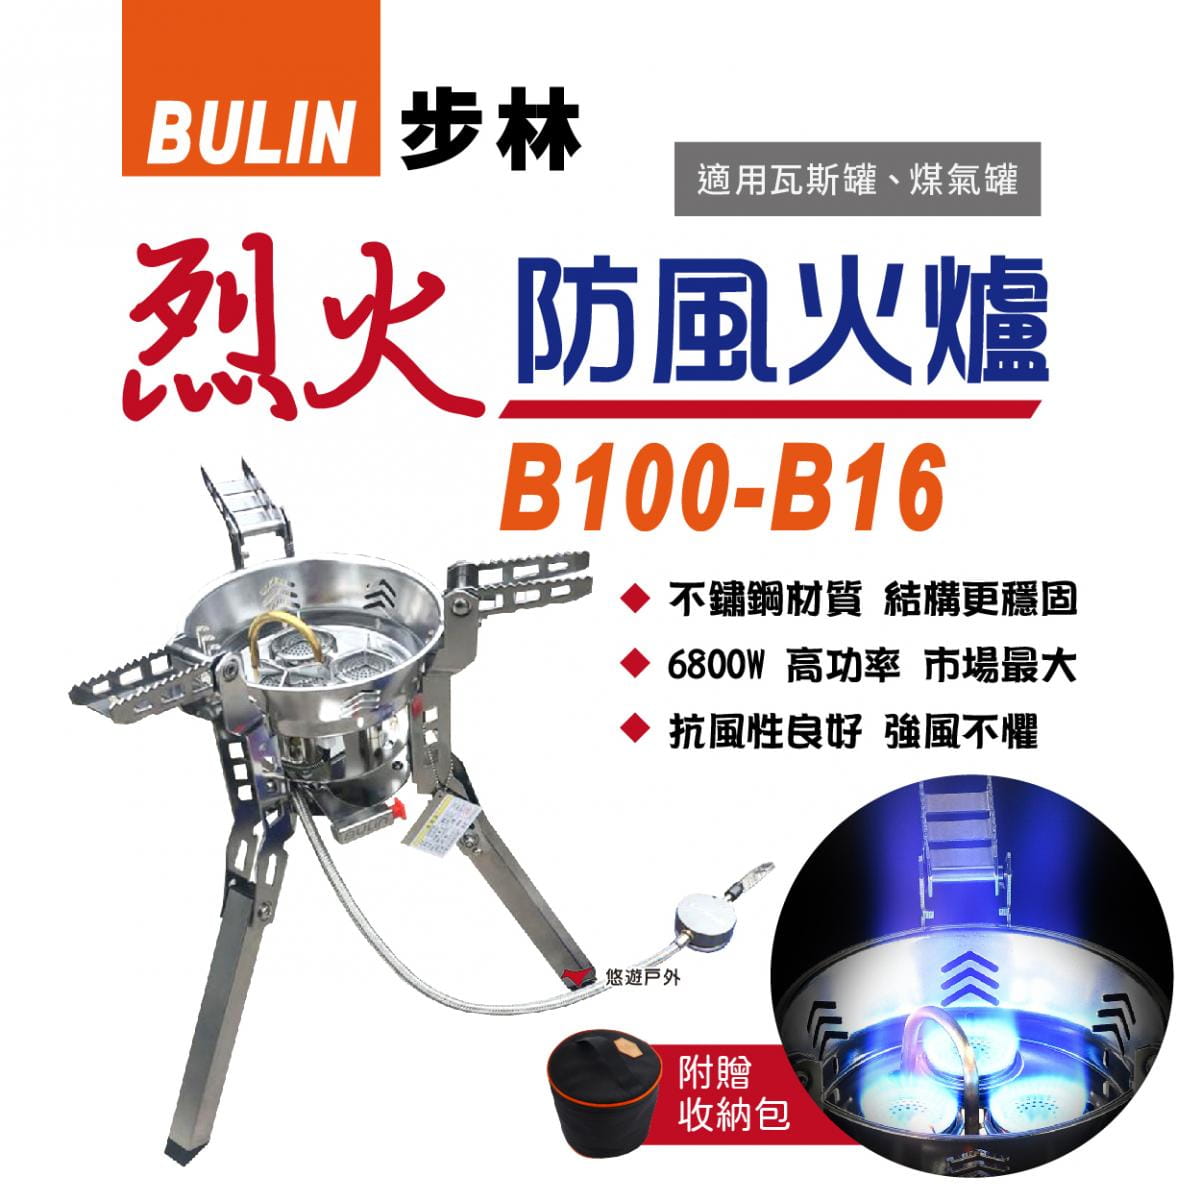 【步林】BULIN 烈火防風火爐 B-100-B16 6800W 野營爐 分體式汽爐 高山瓦斯爐 0